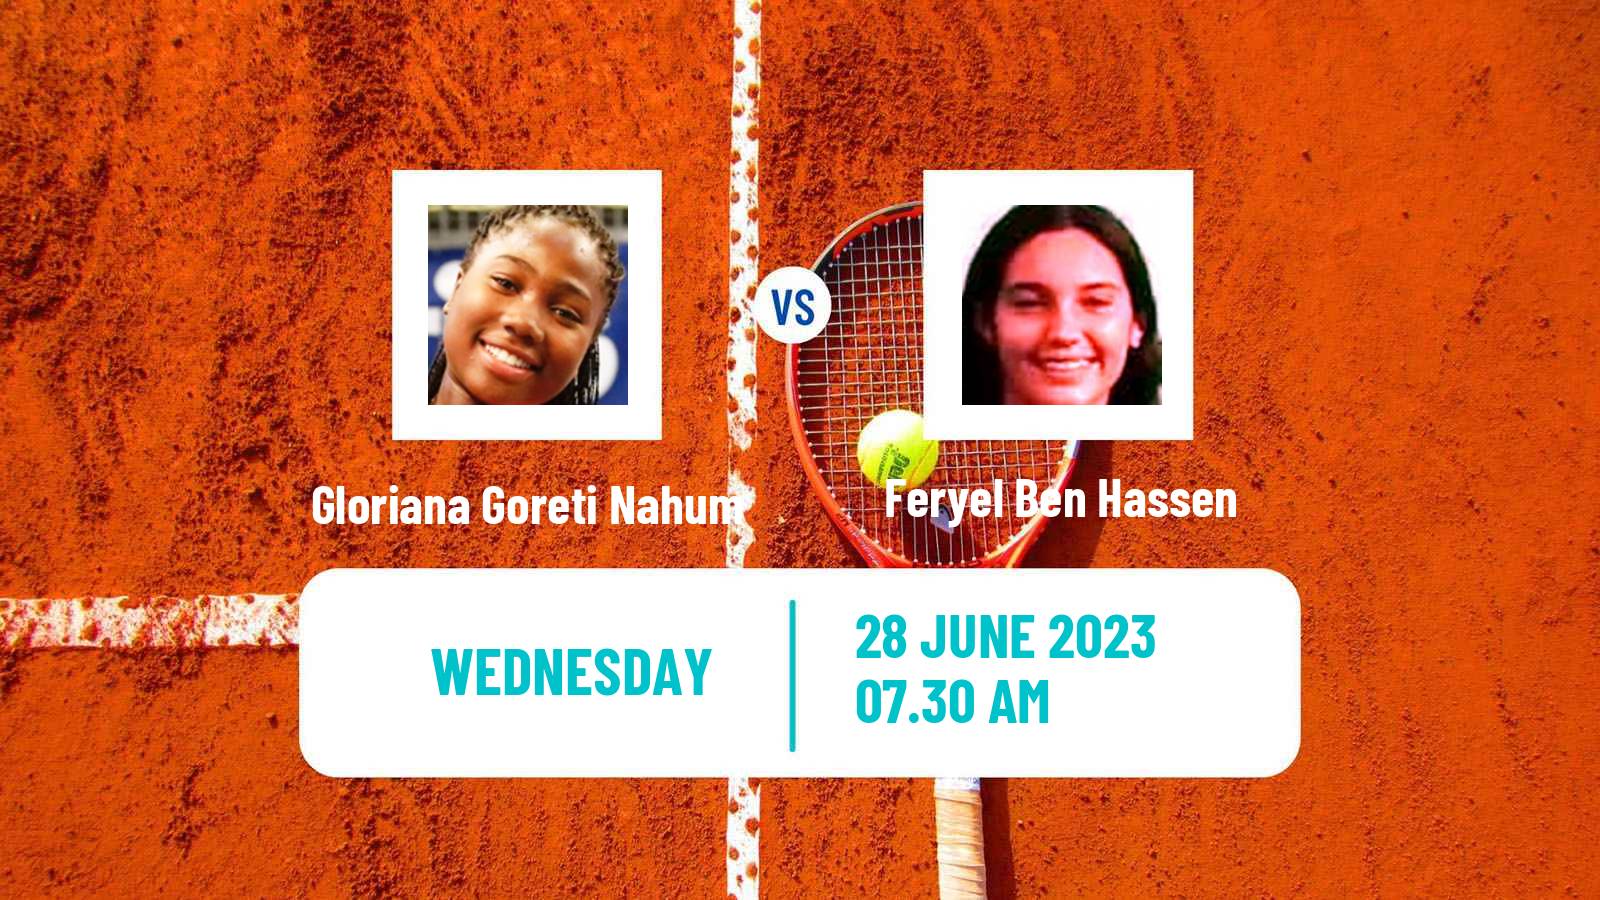 Tennis ITF W15 Monastir 21 Women Gloriana Goreti Nahum - Feryel Ben Hassen